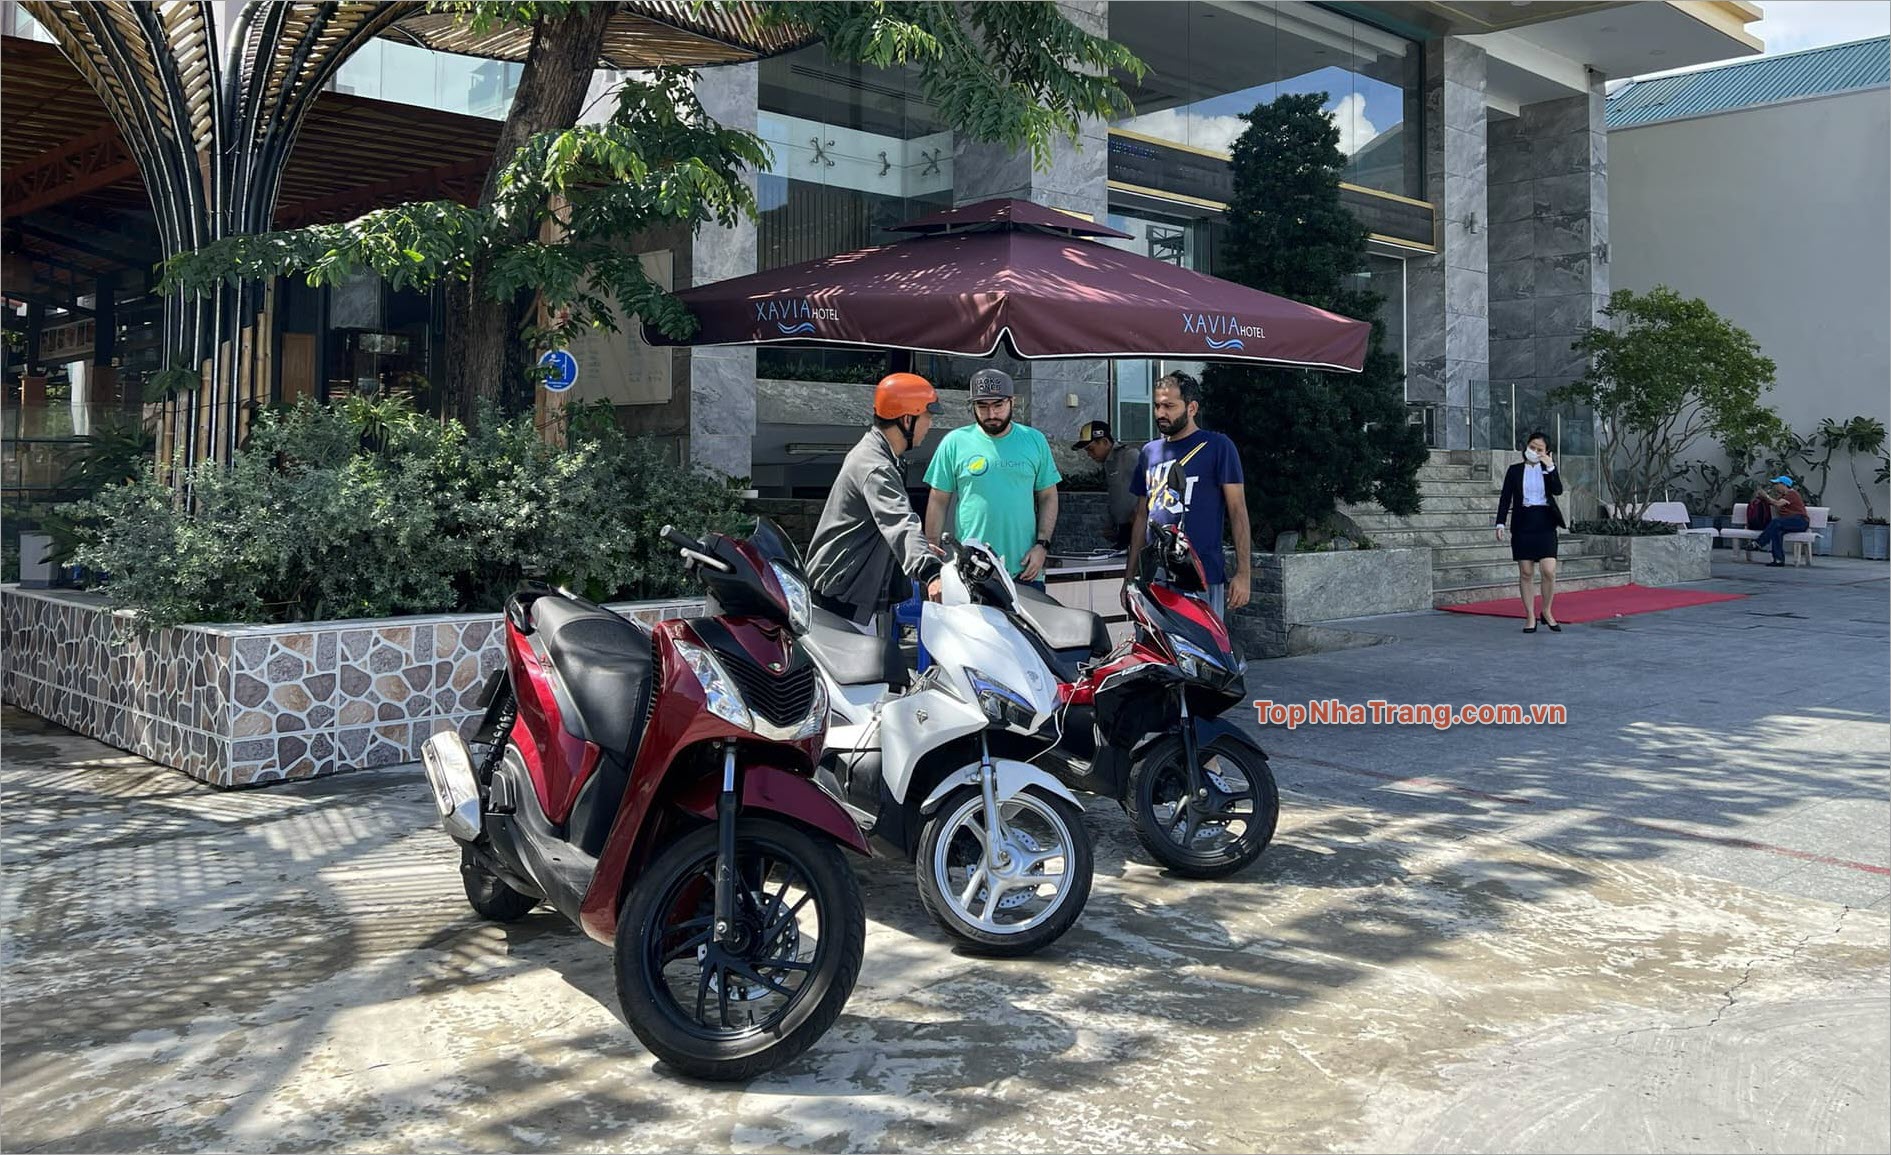 Vivu Nha Trang – Chuyên cho thuê xe máy theo ngày